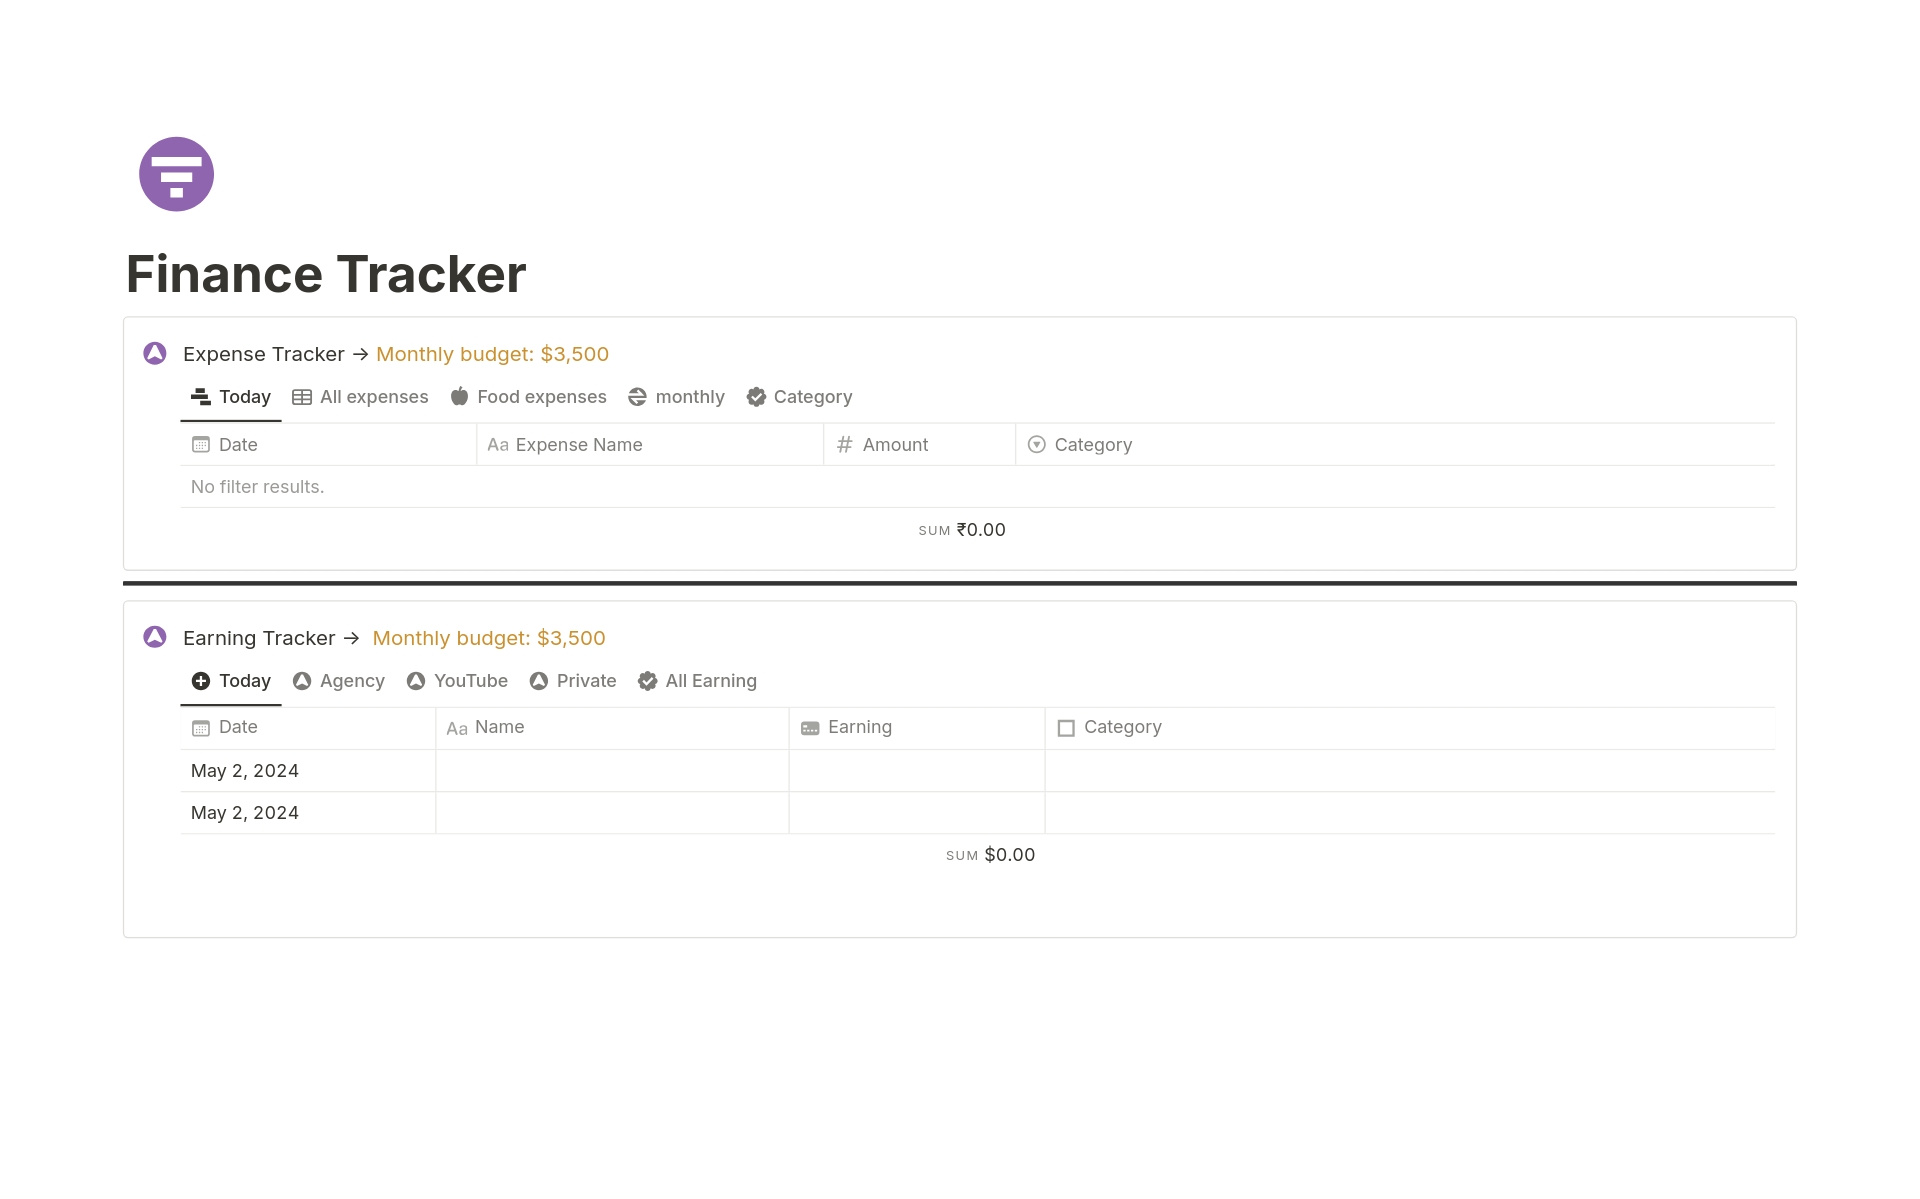 Uma prévia do modelo para Full Finance Tracker Separately 